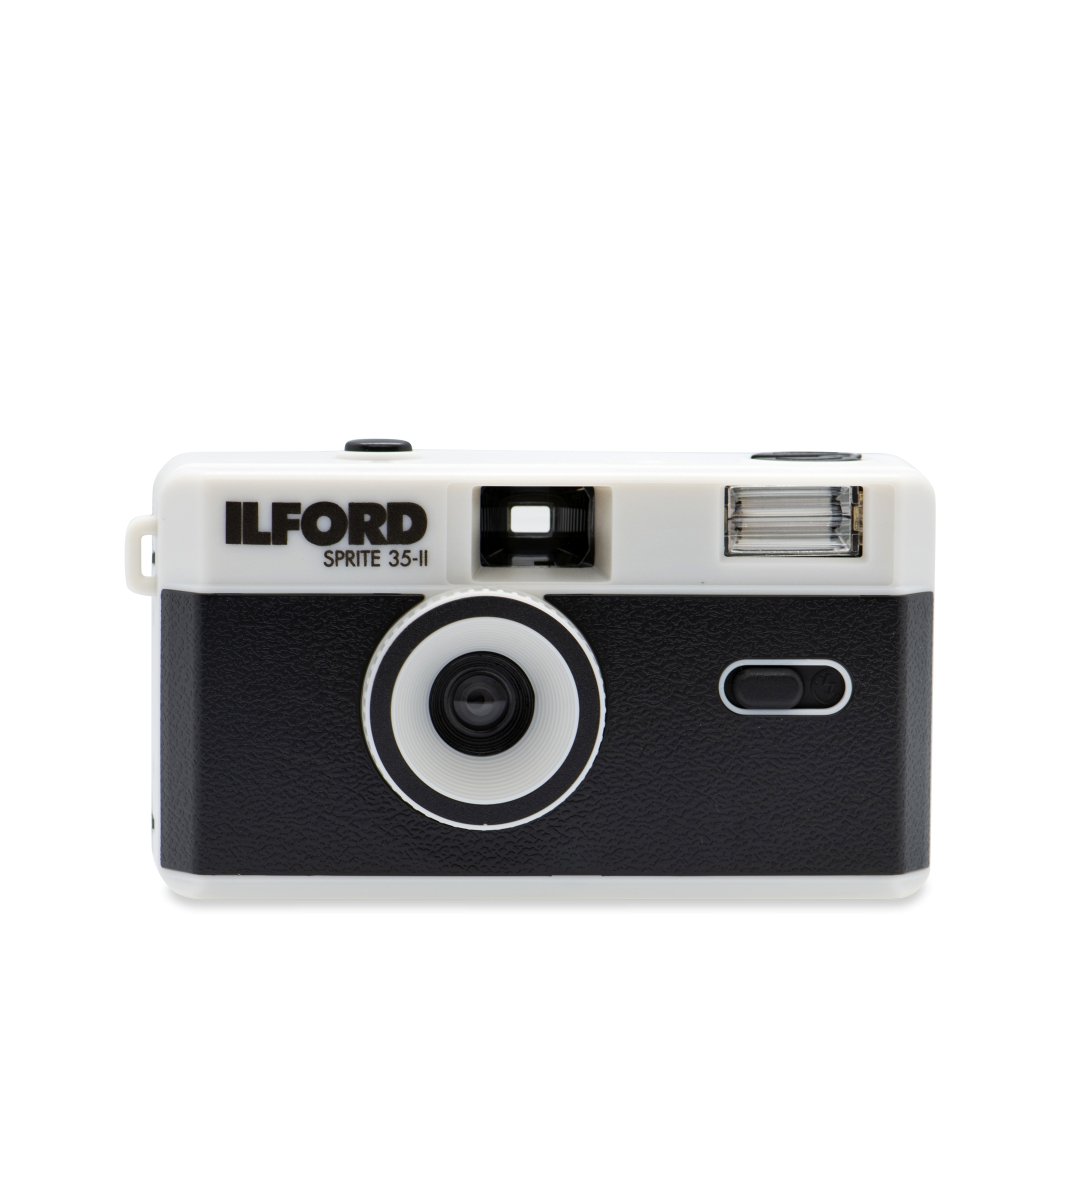 Ilford Sprite 35-II - Reusable 35mm Camera - Classic Black & Silver - Rewind Photo Lab - Ilford